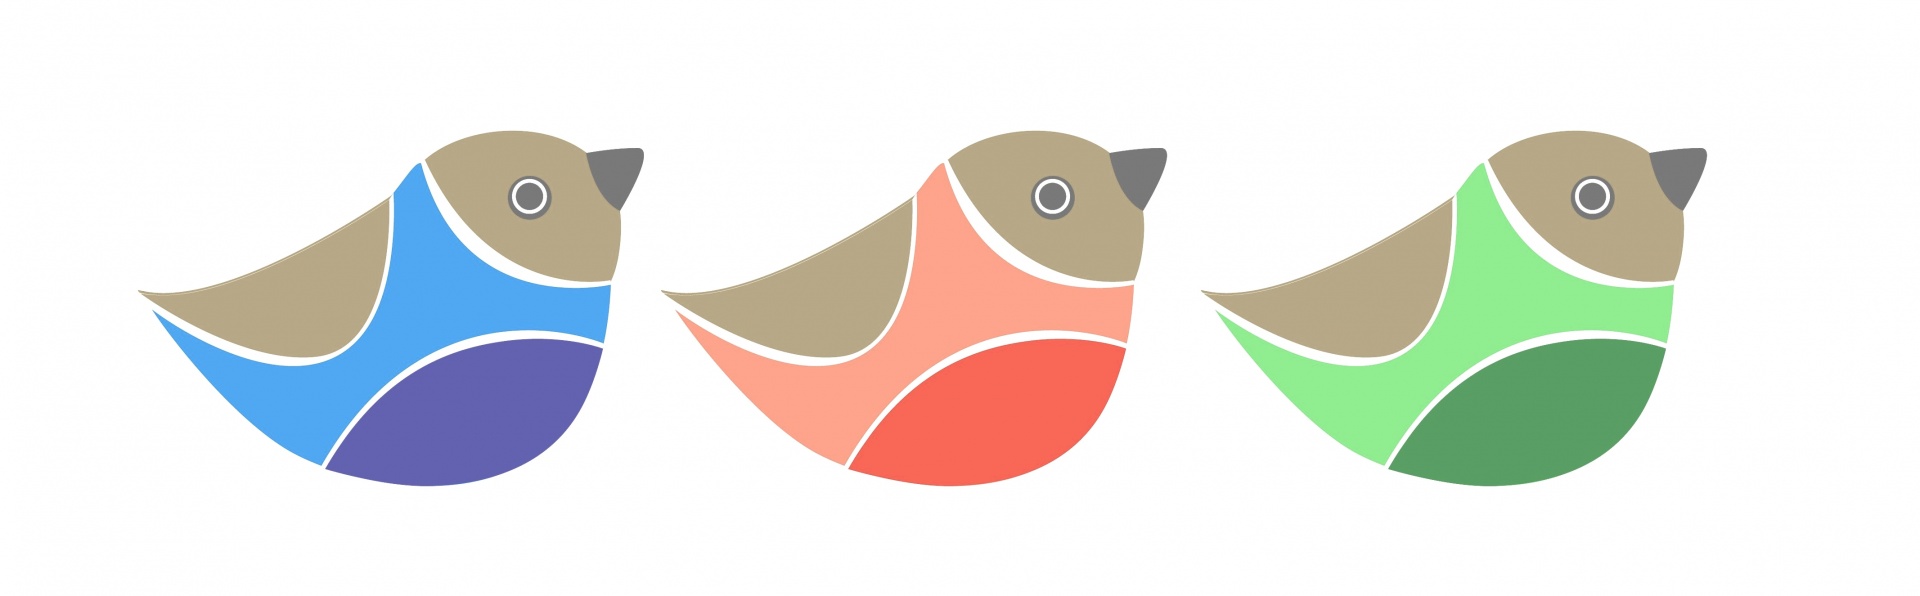 Ilustrované ptáky